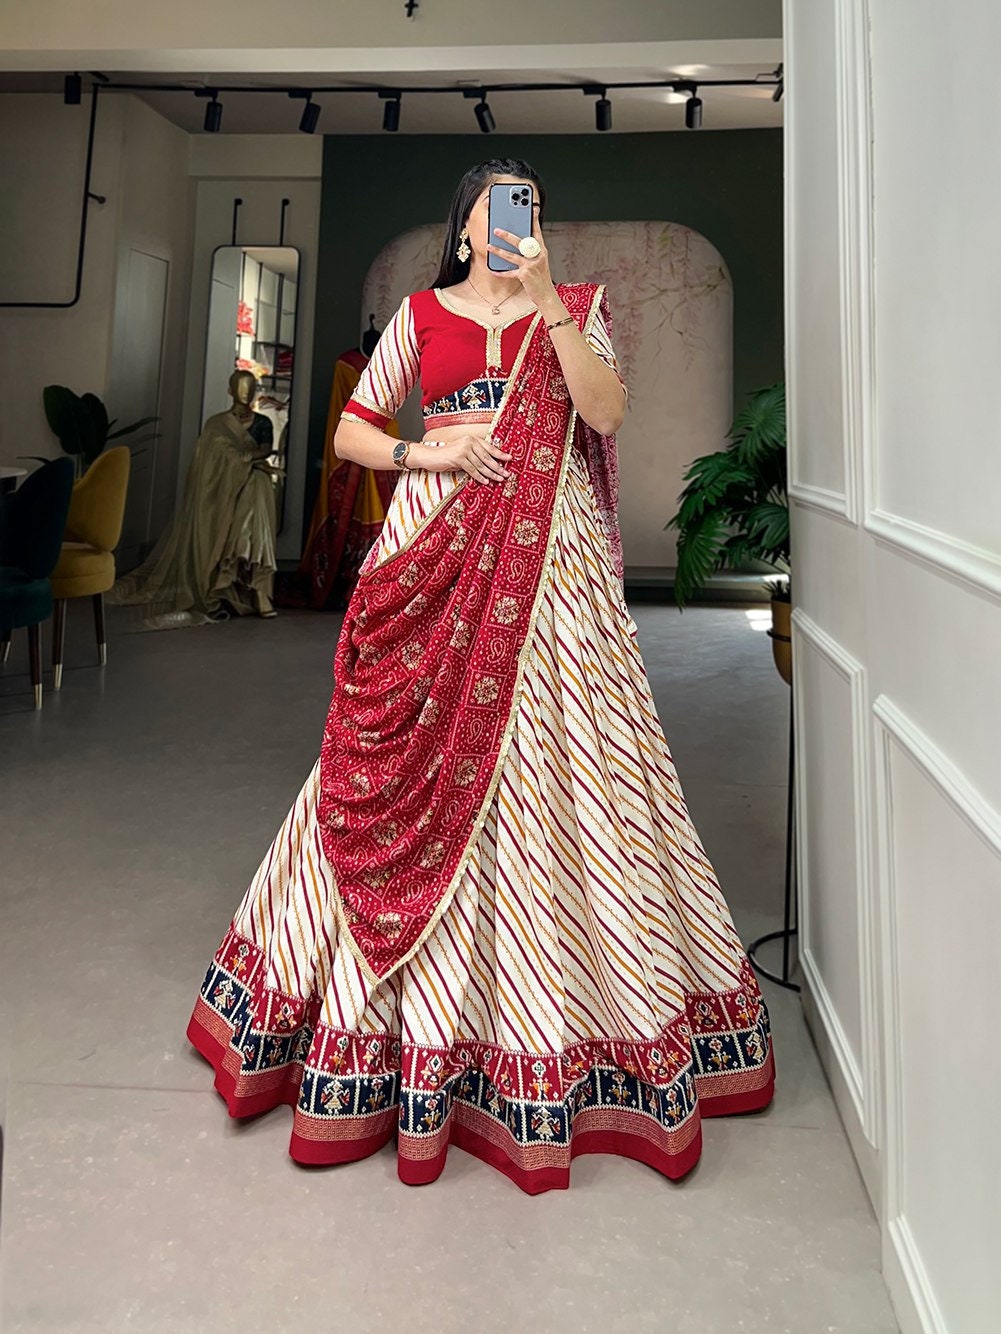 Indian Cream Cearl Gold Crystal Embellished Hand Embroidered Adult Belt  Sari Saree Dress Costume Bridal Belt 103 